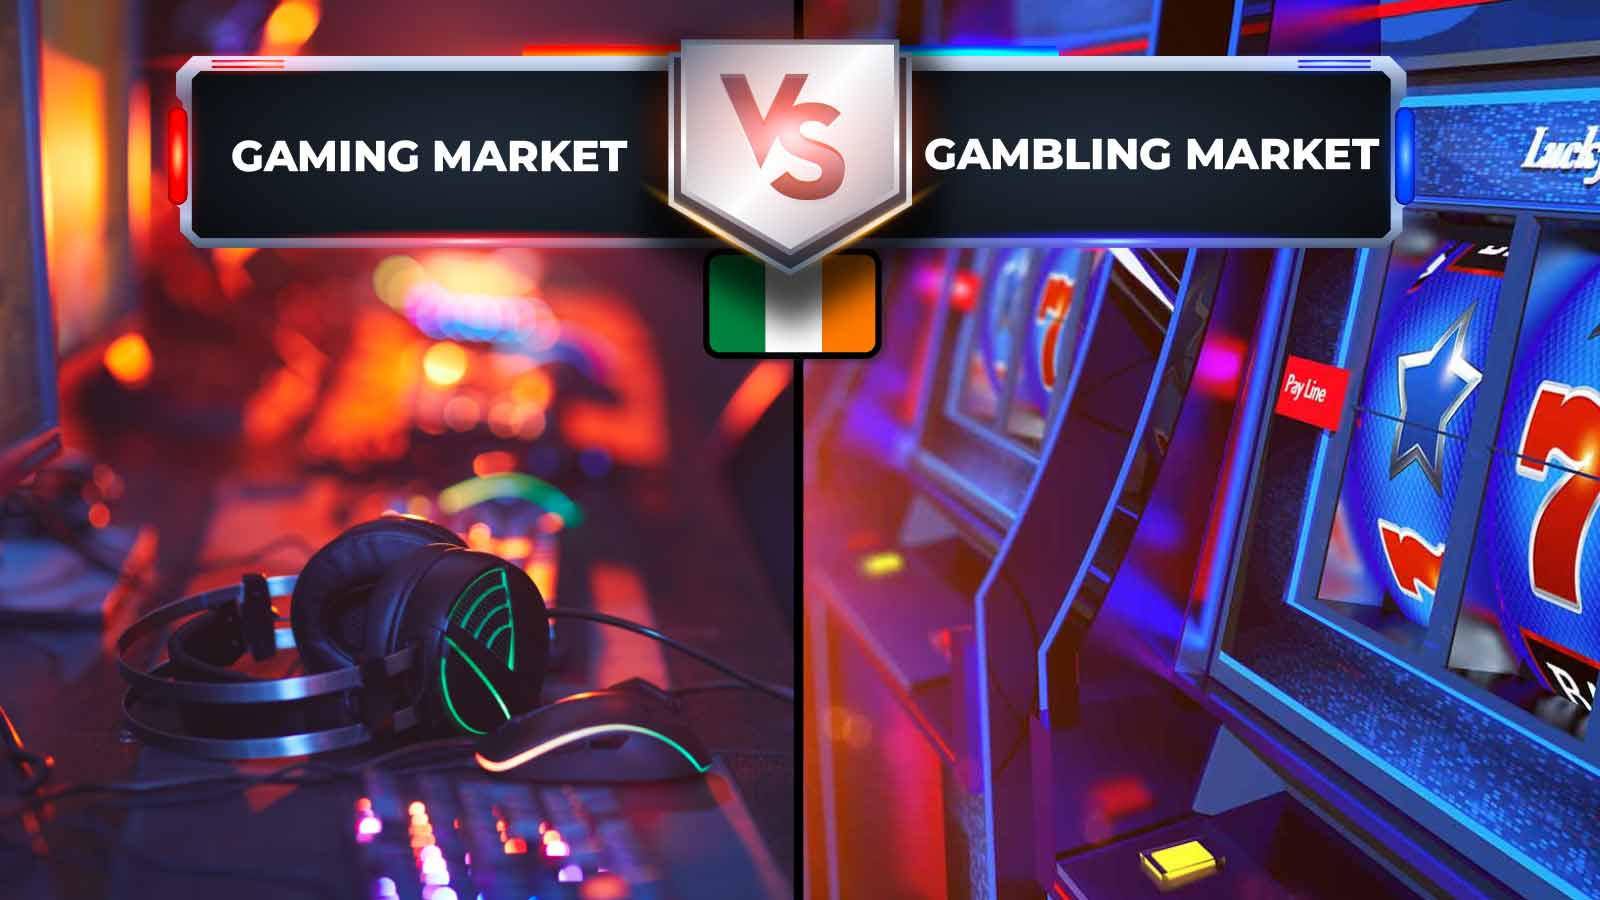 Gaming Market VS Gambling Market in Irland